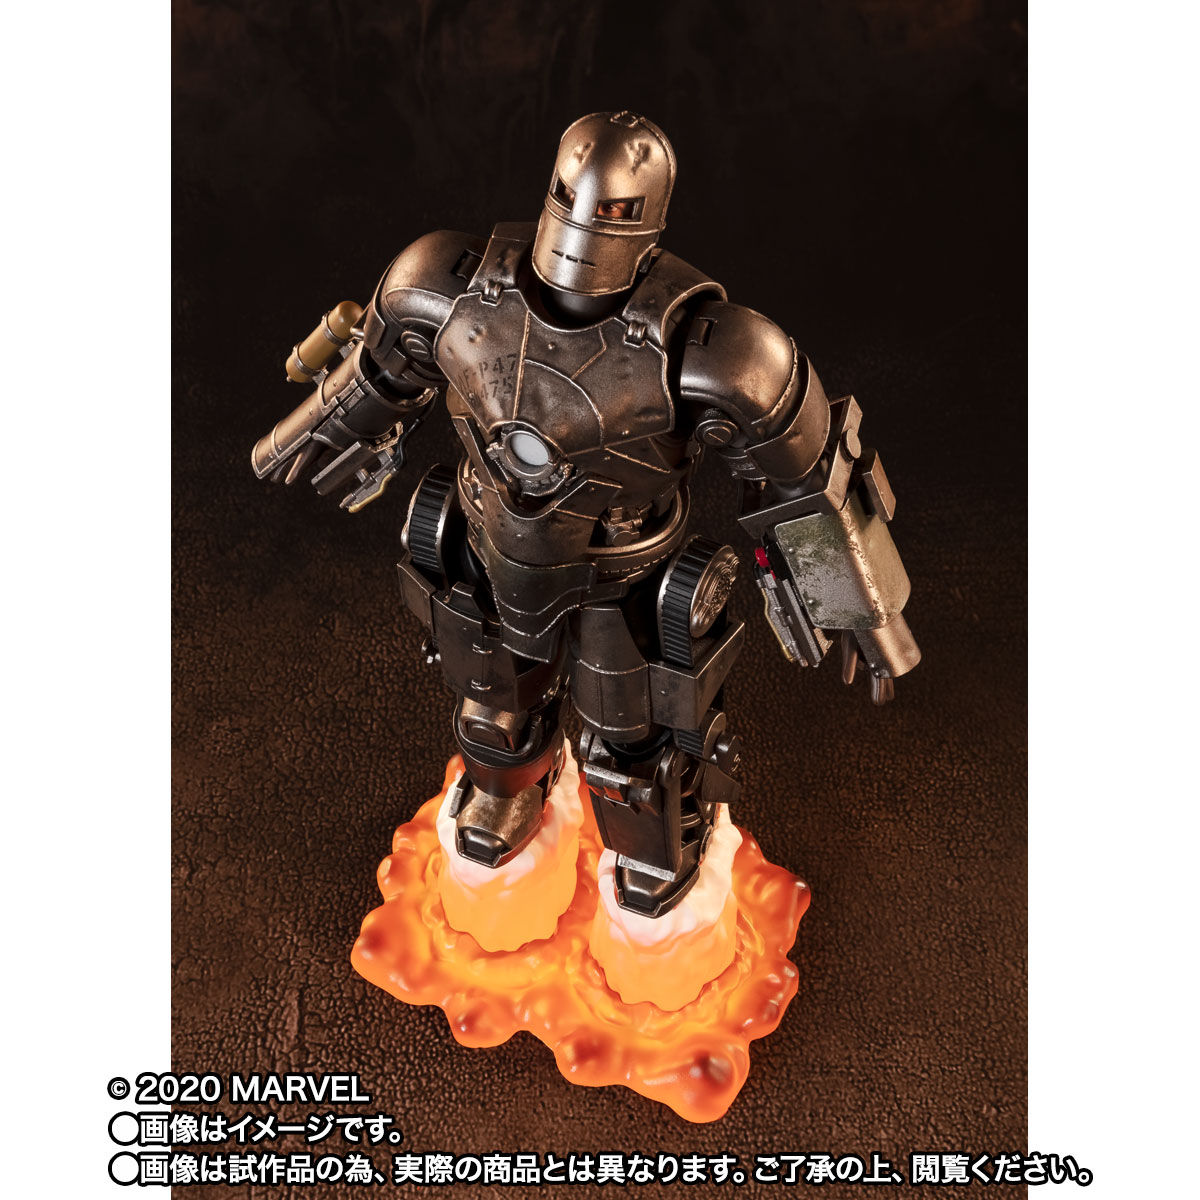 【限定販売】S.H.Figuarts『アイアンマン マーク1《Birth of Iron Man》EDITION』アイアンマン 可動フィギュア-006